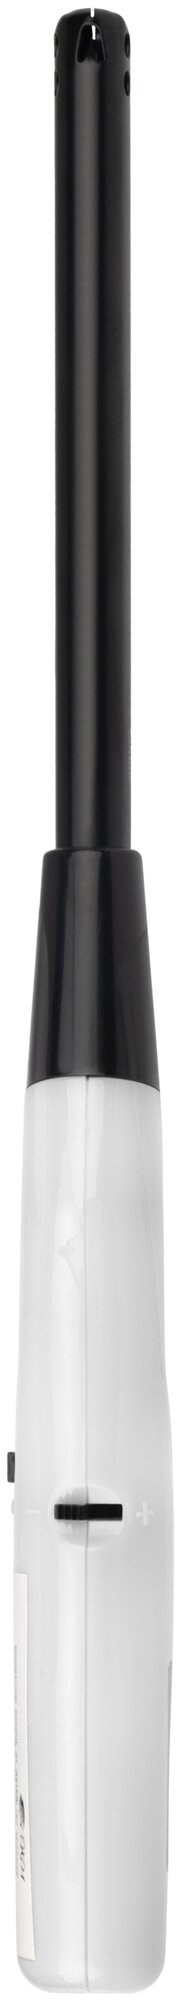 Бытовая газовая пьезозажигалка с классическим пламенем, многоразовая (1 шт.) белая СК-302L сокол - фотография № 8